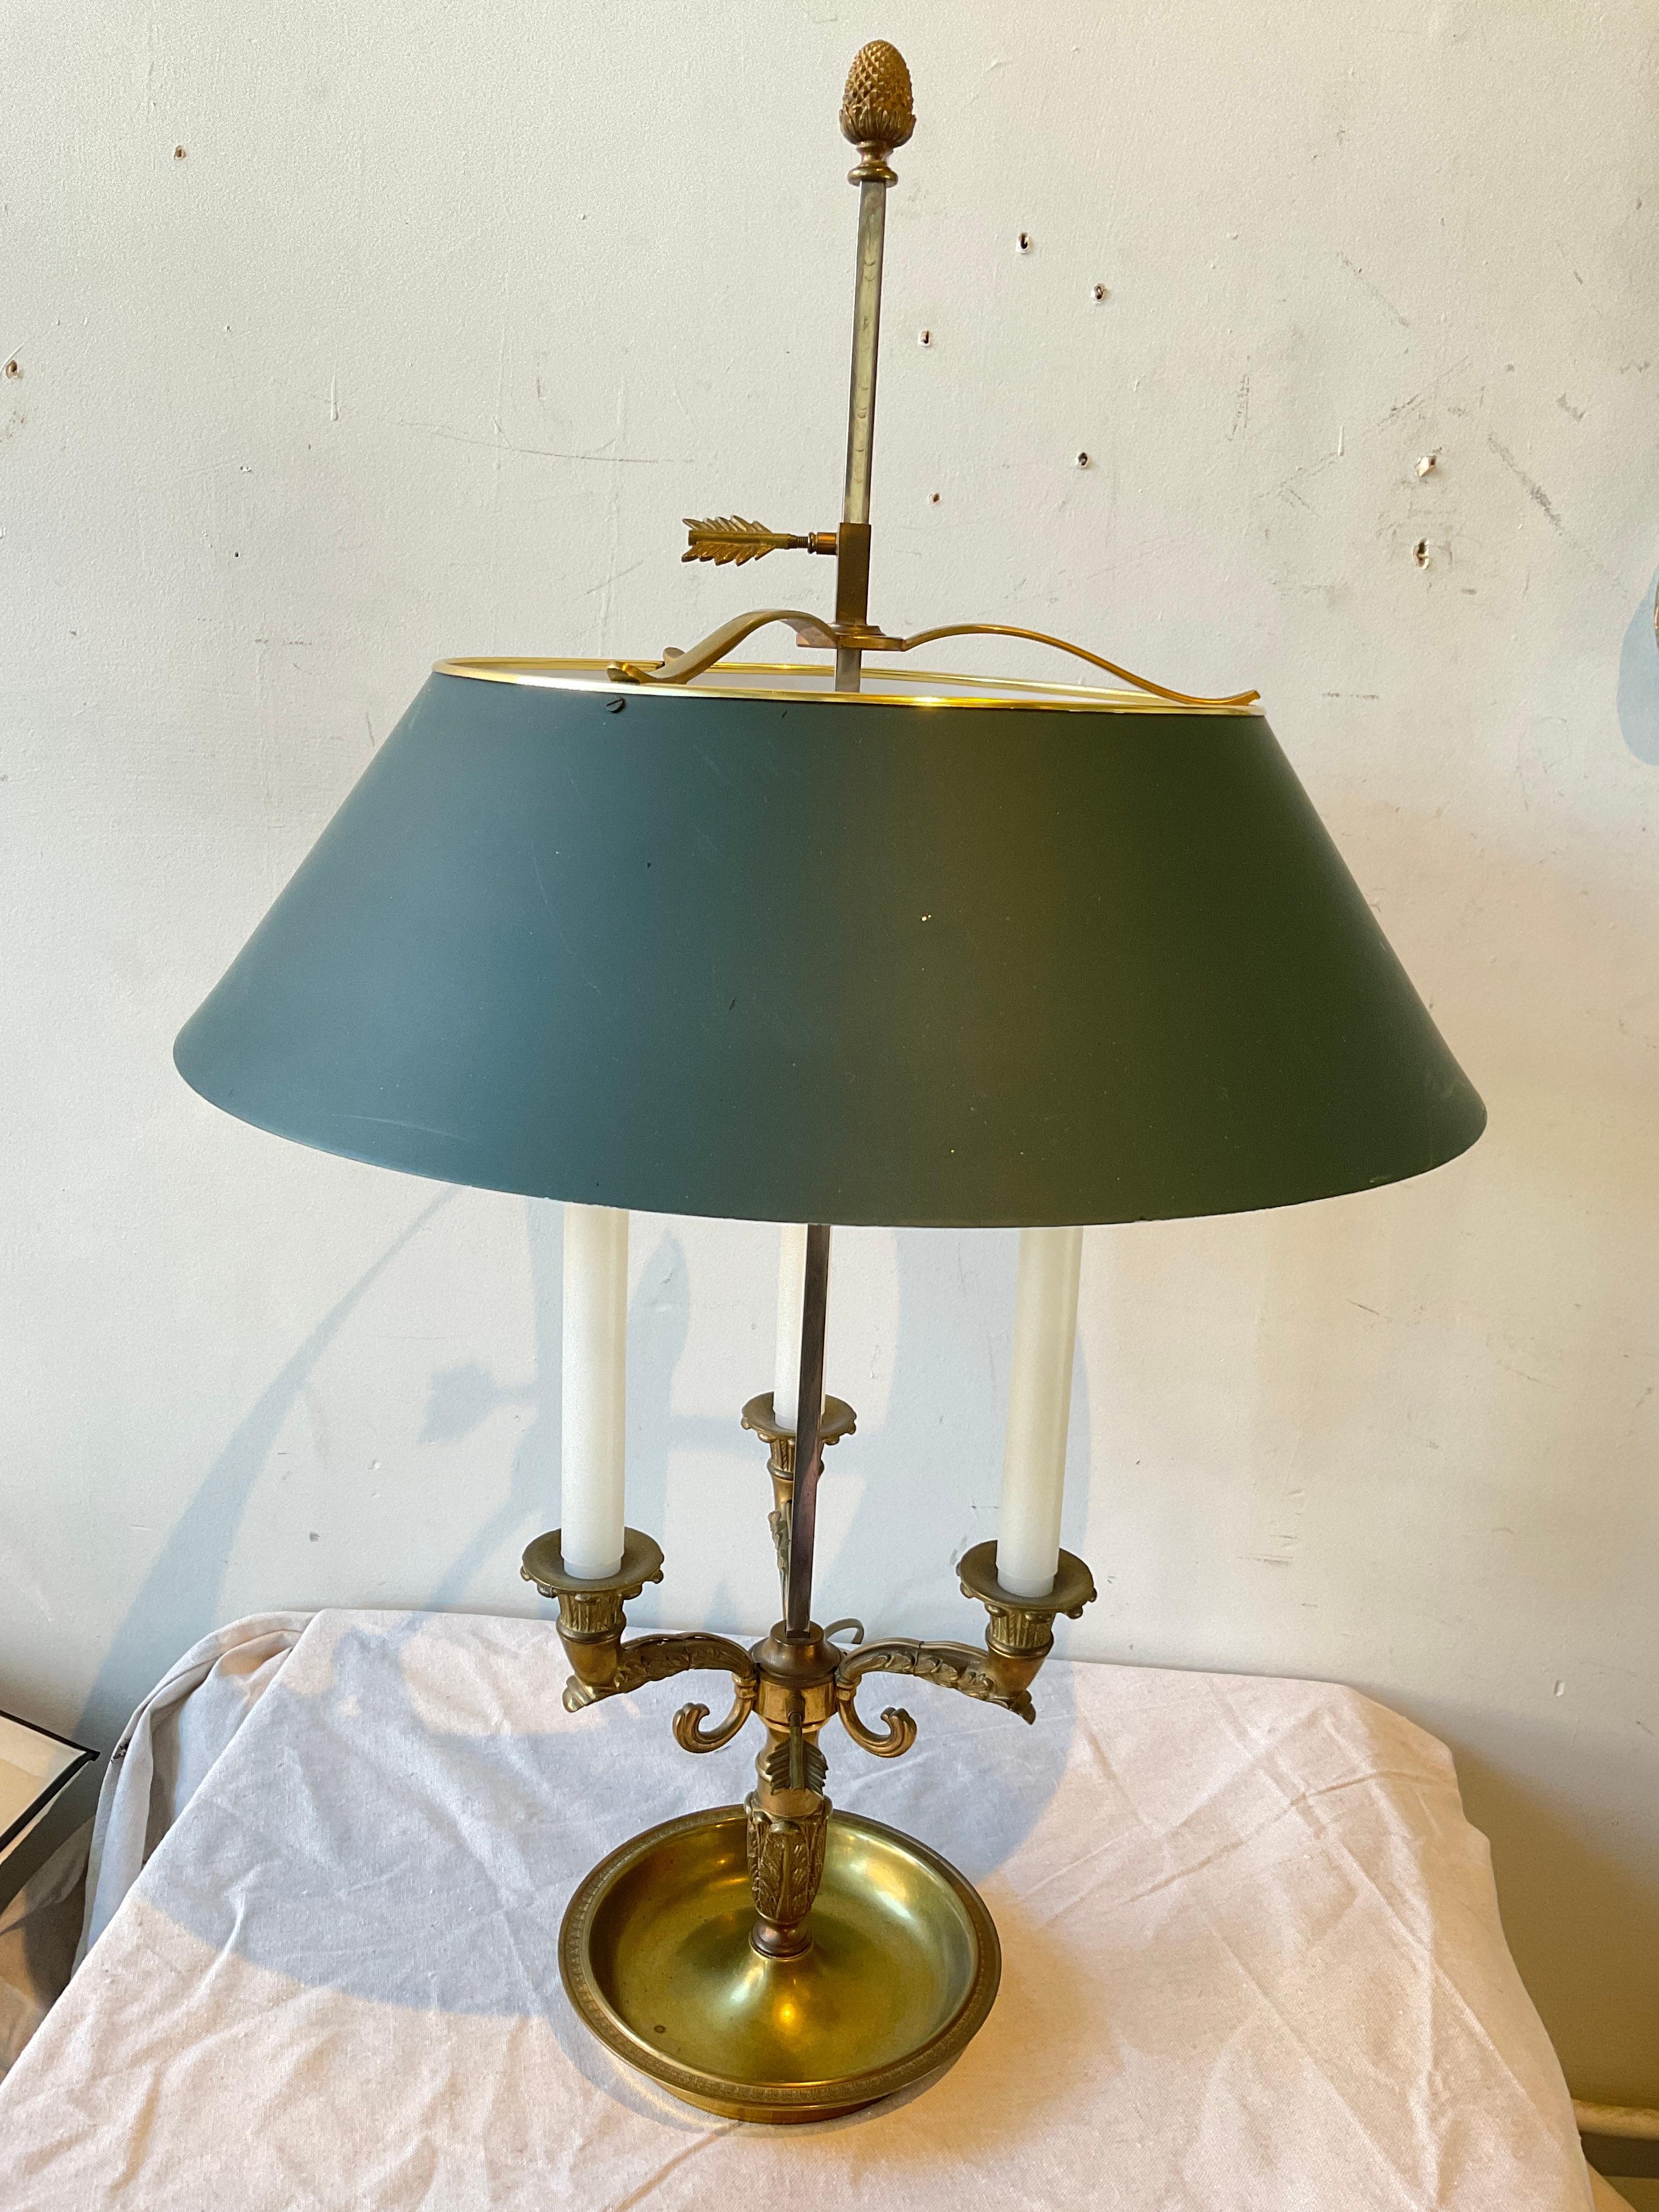 Bouillotte Lampe aus Messing mit grünem Schirm. Massives Messing.
Hat originale Verkabelung, muss neu verkabelt werden.